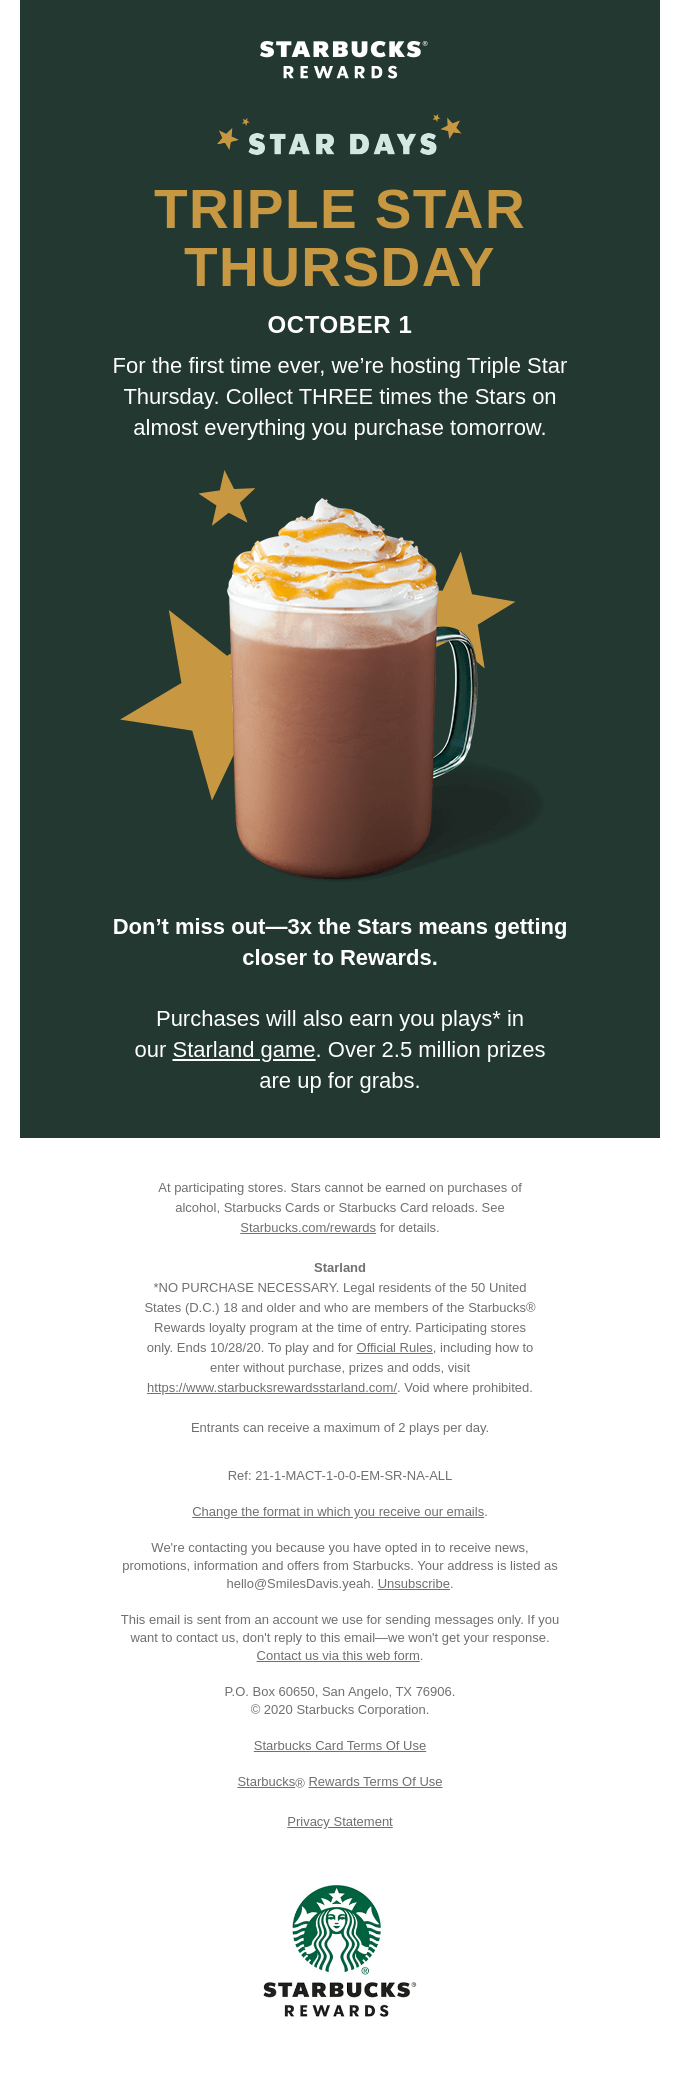 It's Triple Star Thursday tomorrow - Starbucks Email Newsletter